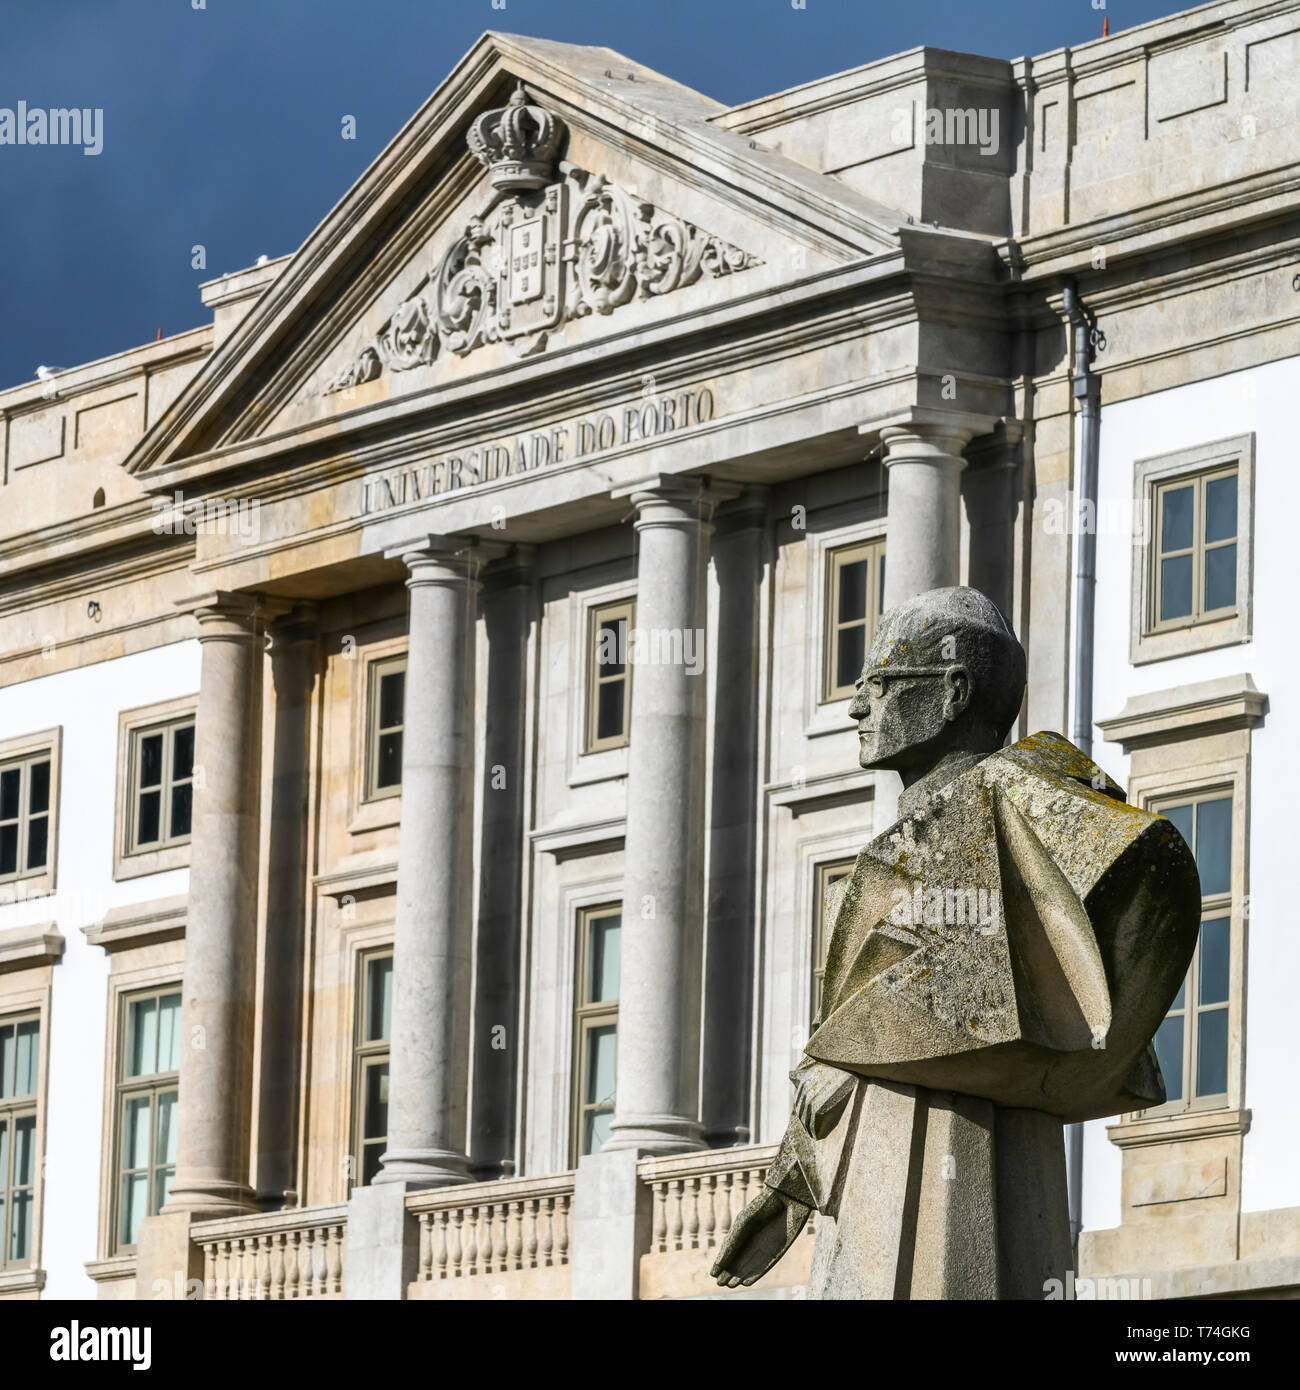 Bâtiment et statue à l'Université de Porto, Porto, Portugal Banque D'Images